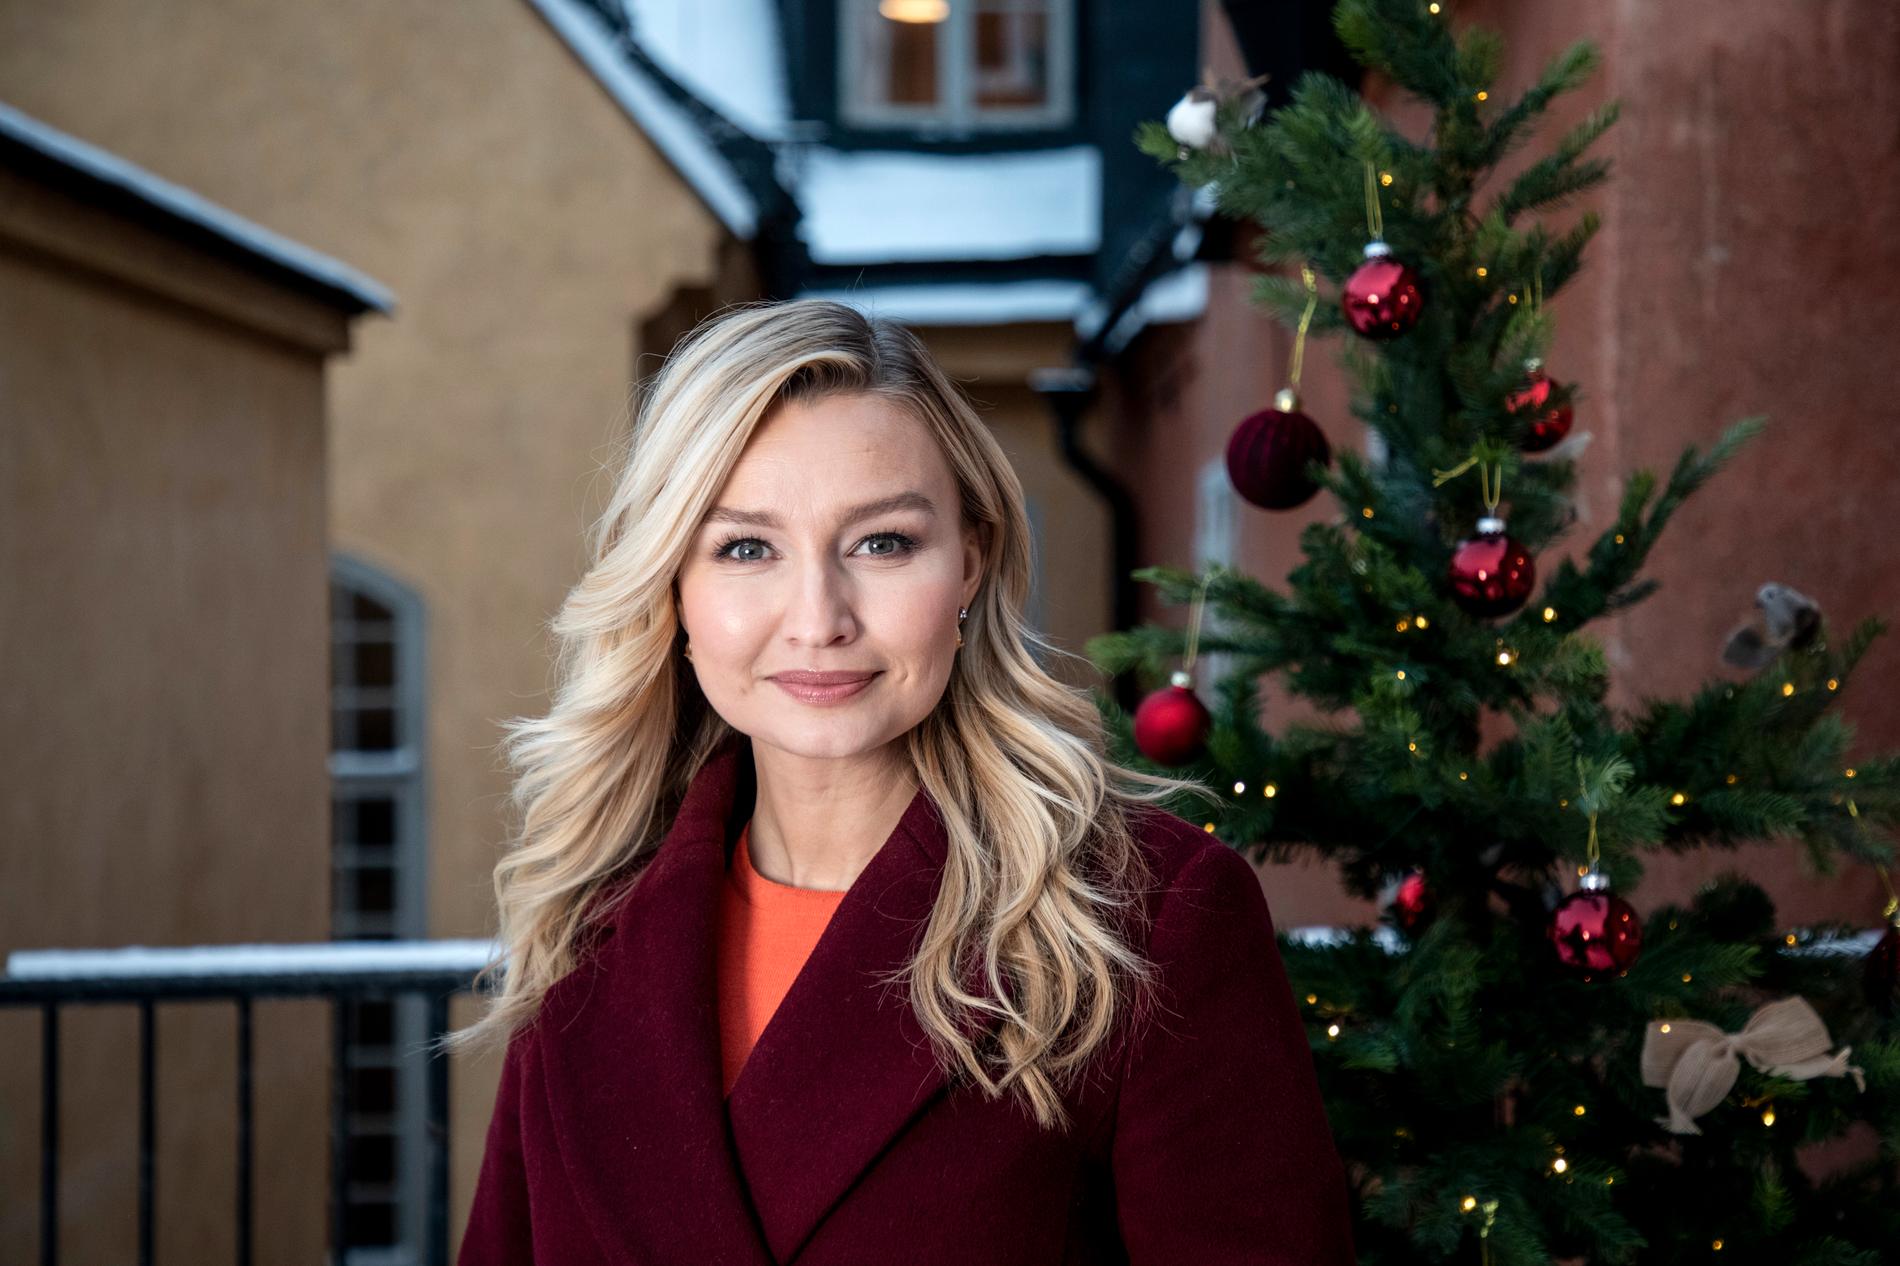 Kristdemokraternas partiledare Ebba Busch höll sitt jultal digitalt från takterassen ovanför Kristdemokraternas riksdagskansli.